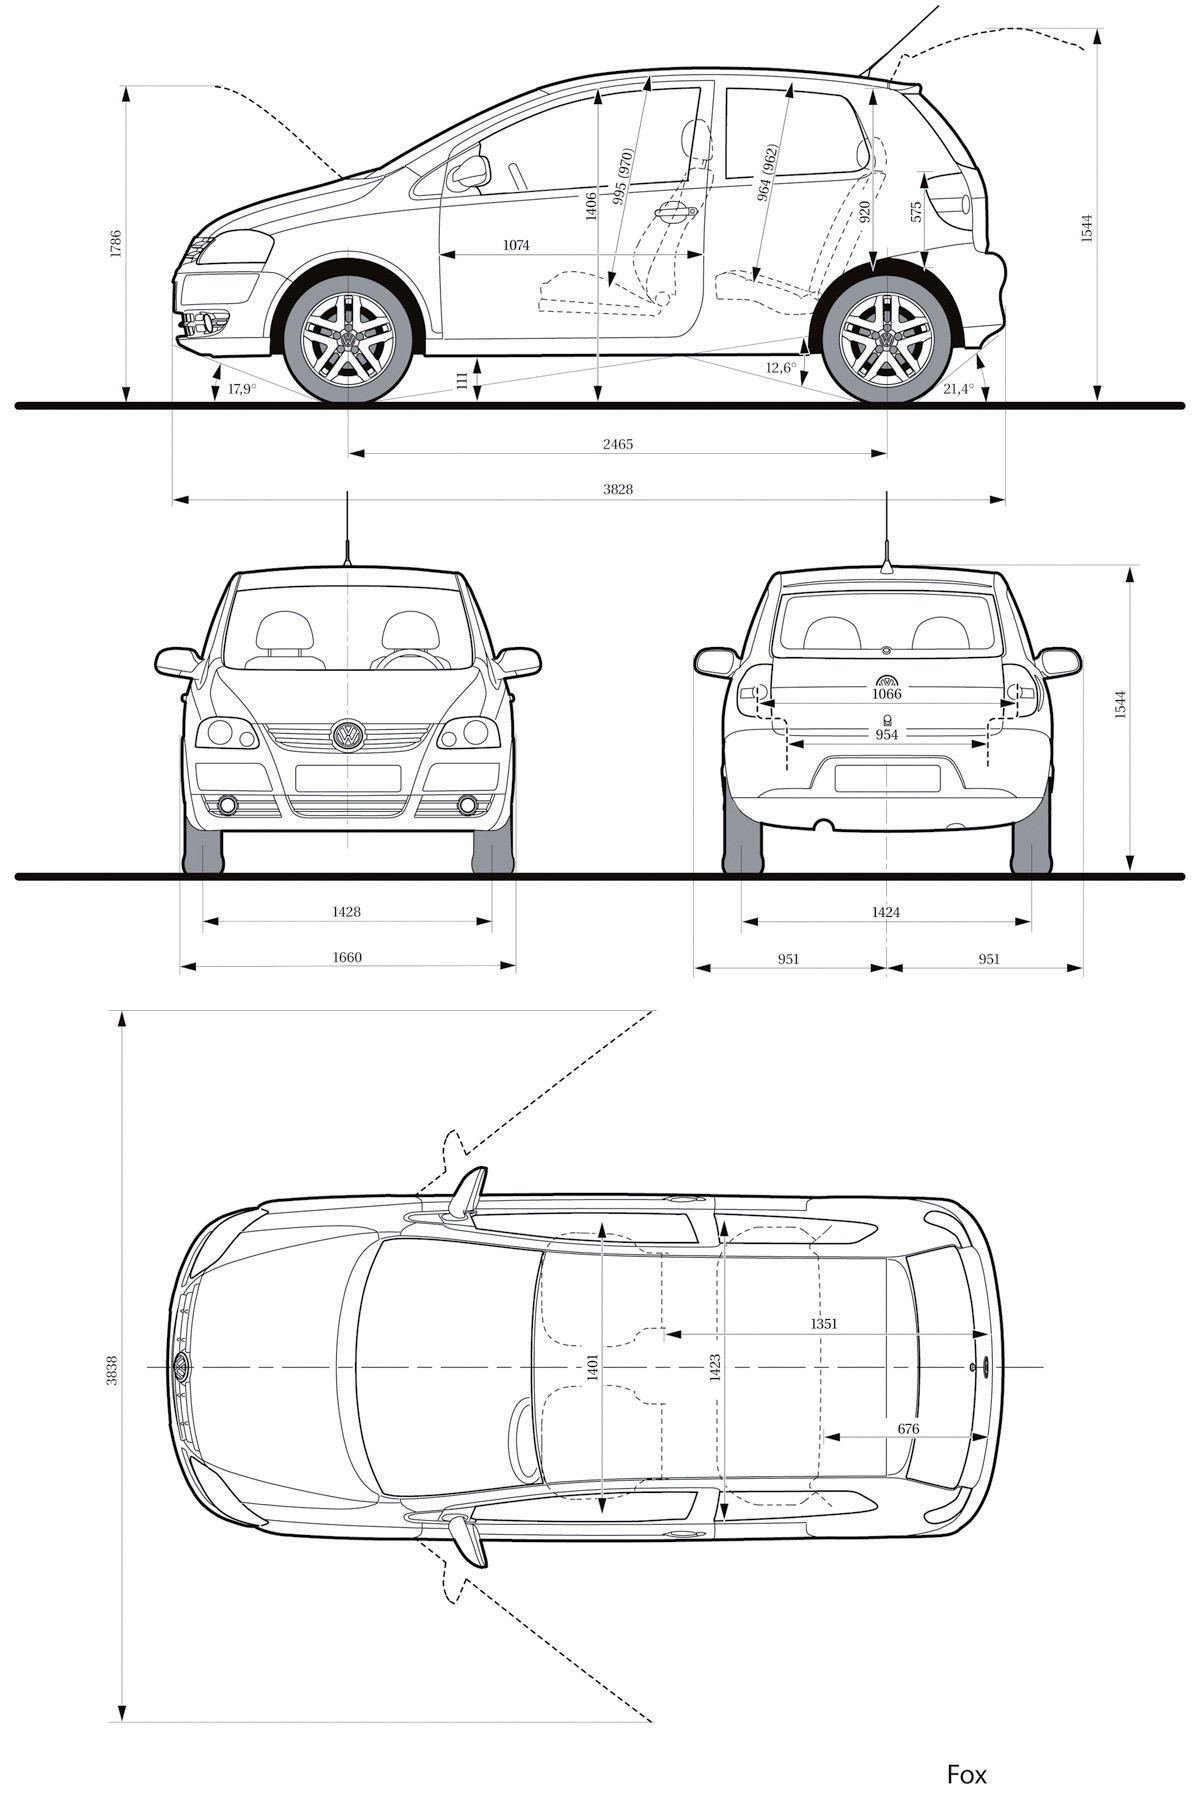 Volkswagen Fox blueprint